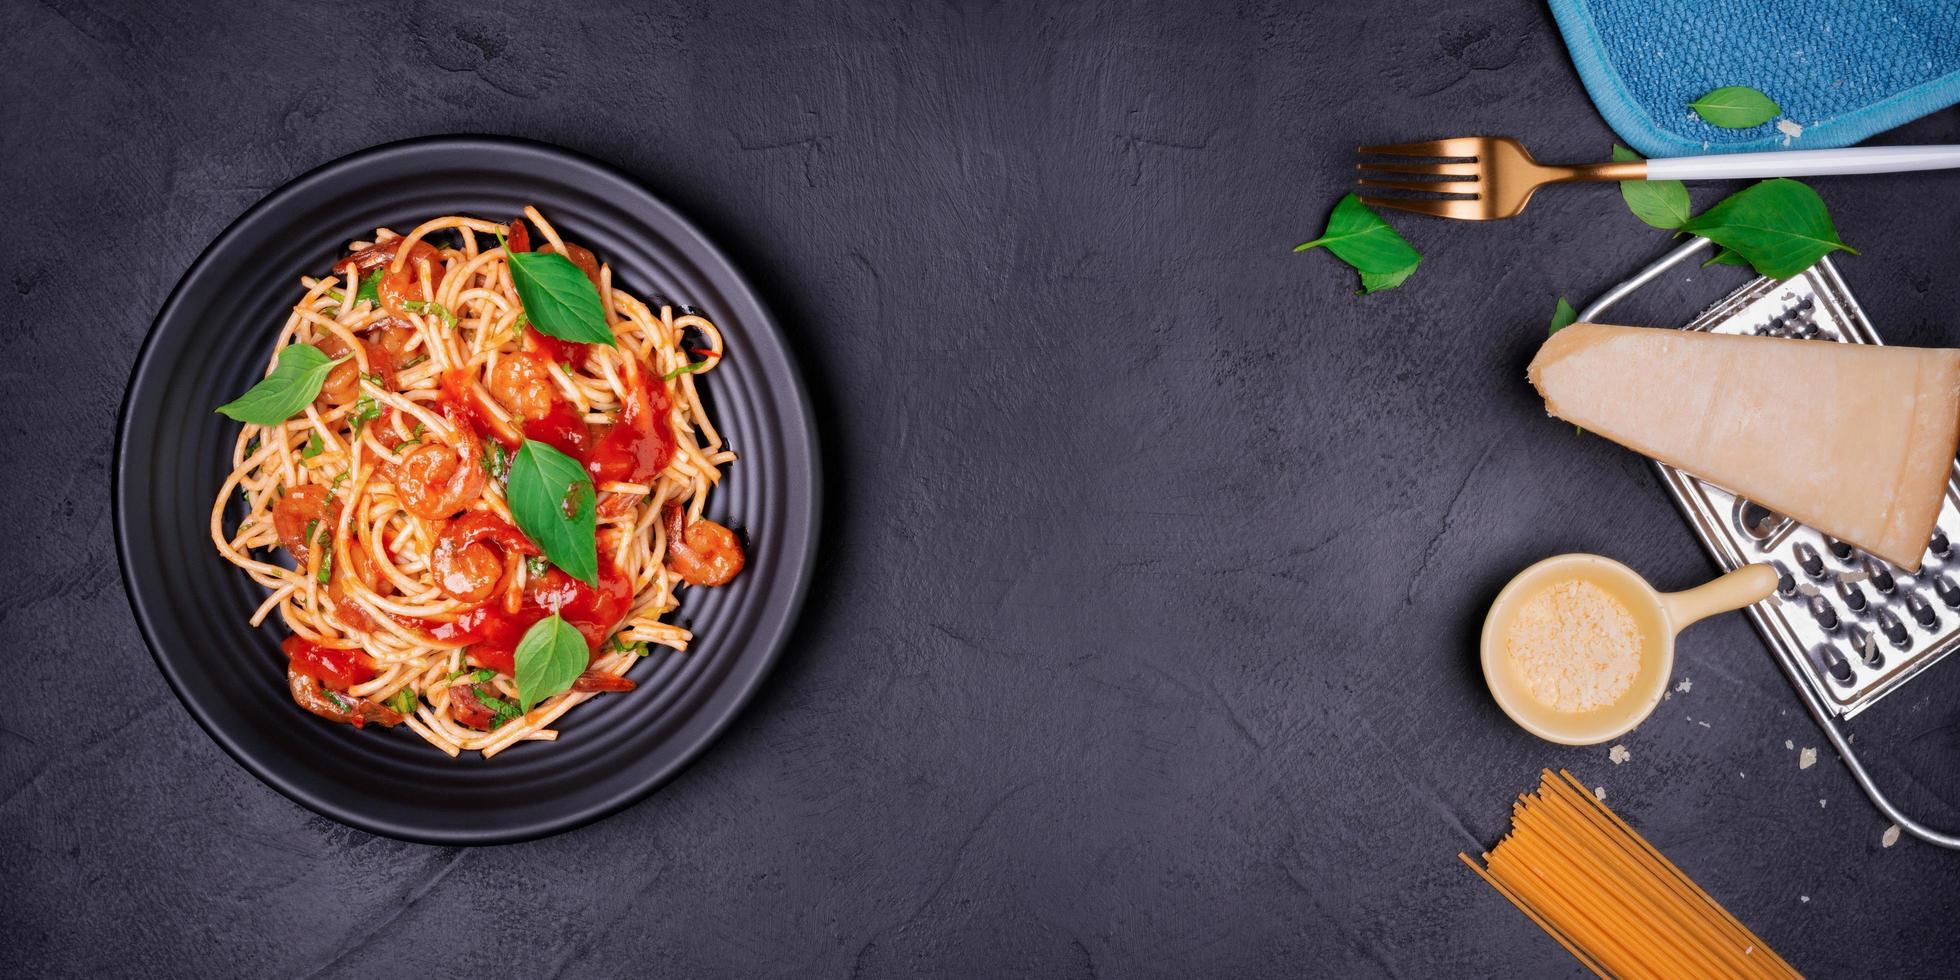 delicioso macarrão espaguete com camarão e queijo servido em um prato preto sobre uma receita italiana de mesa de fundo preto, molho de tomate, legumes e especiarias vista superior com espaço de cópia foto